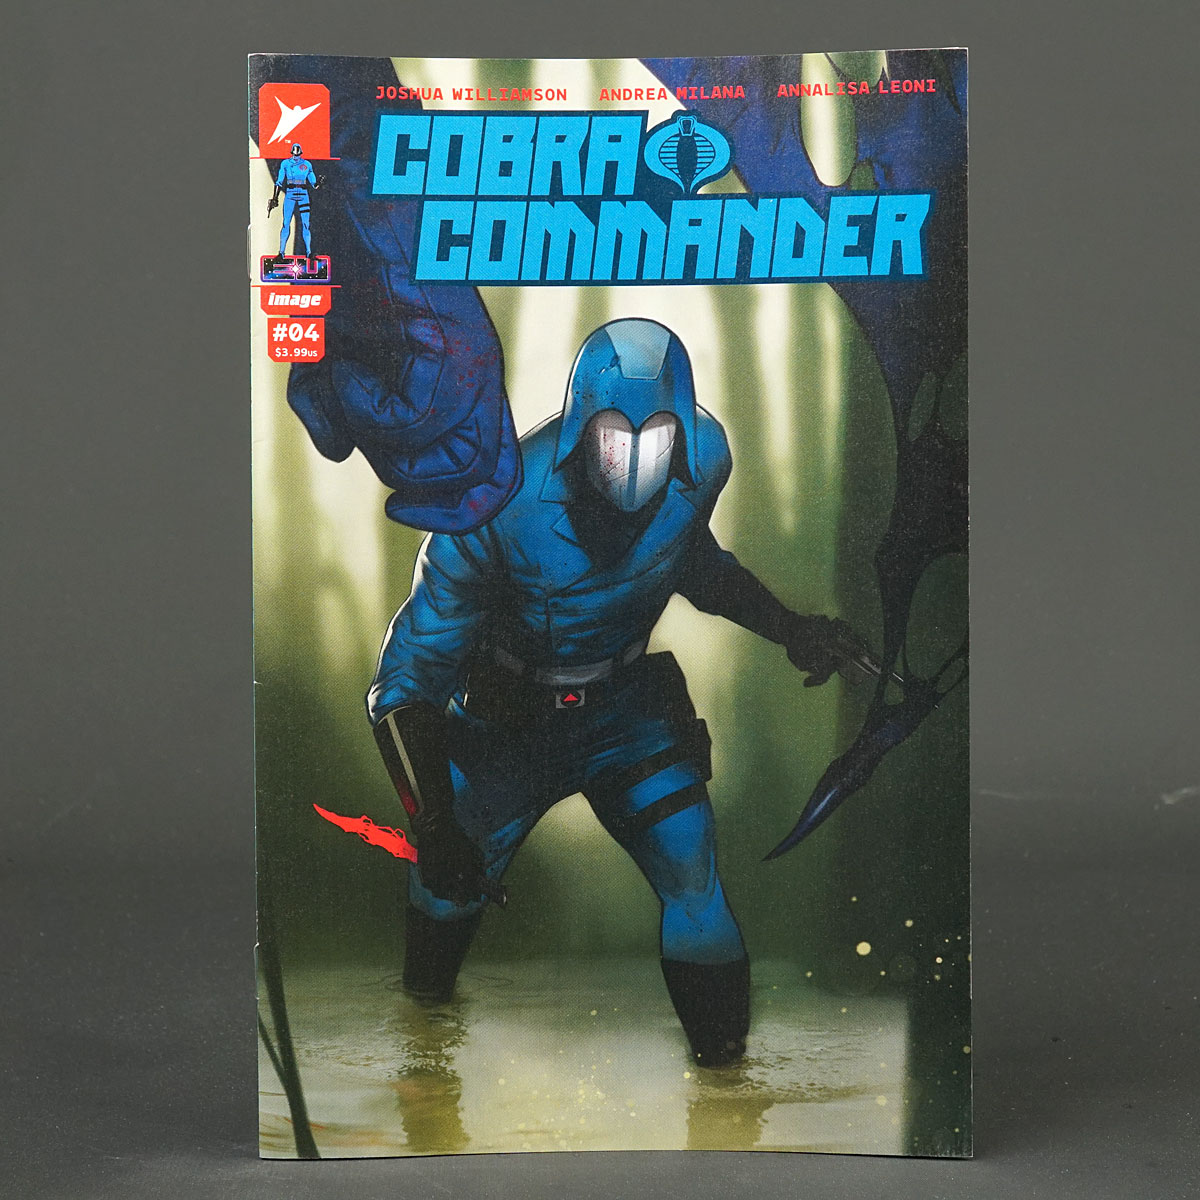 COBRA COMMANDER #4 Cvr E 1:50 Image Comics 4E 0224IM259 (CA) Oliver